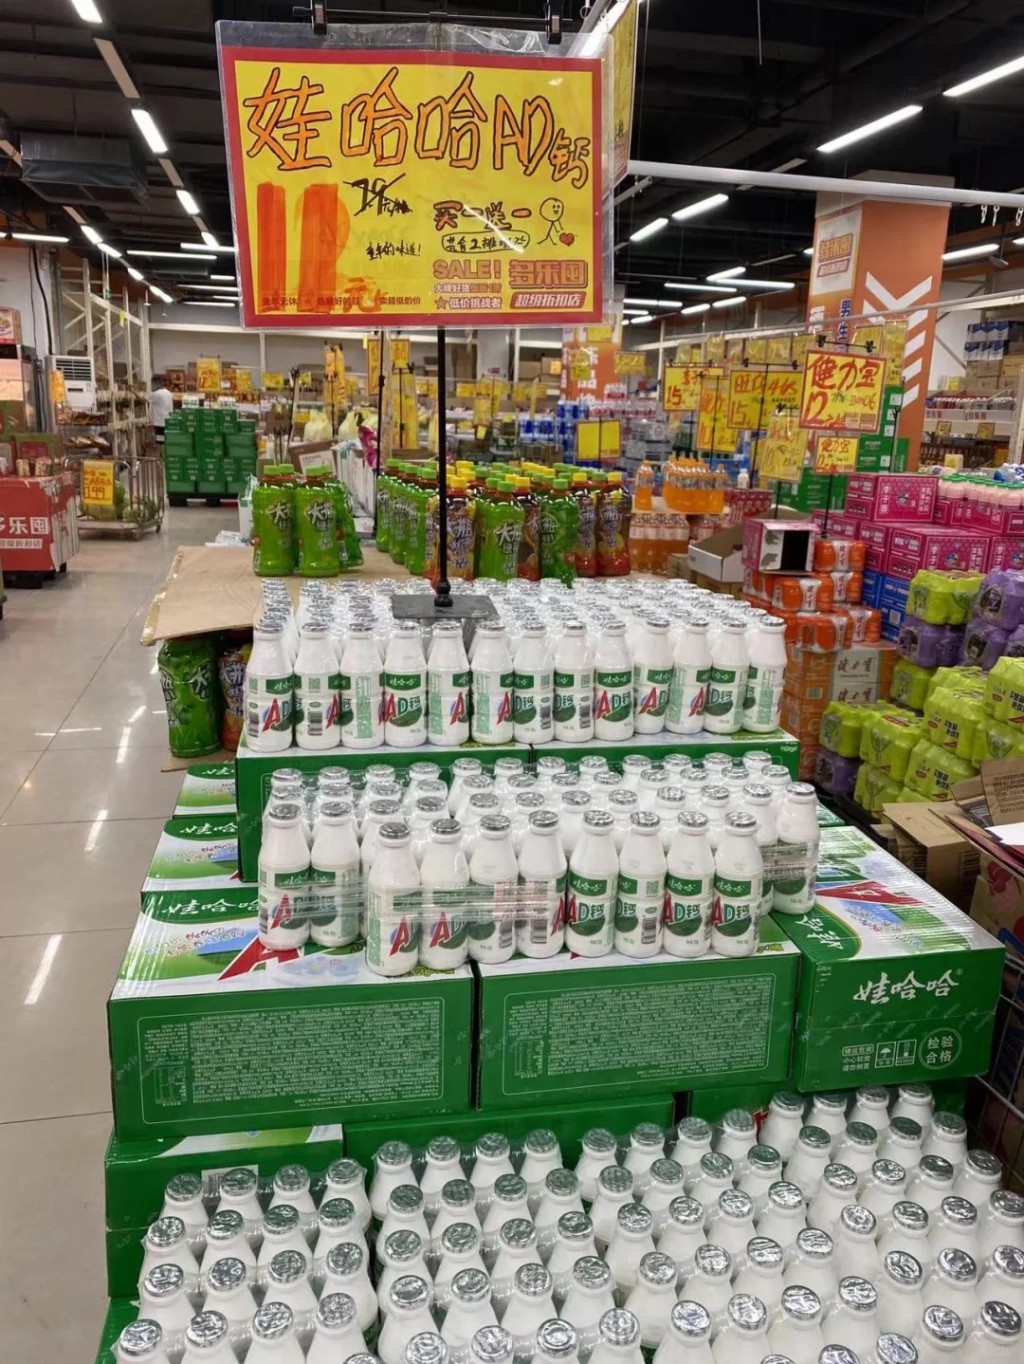 娃哈哈集团是中国最大的食品饮料生产企业。小红书